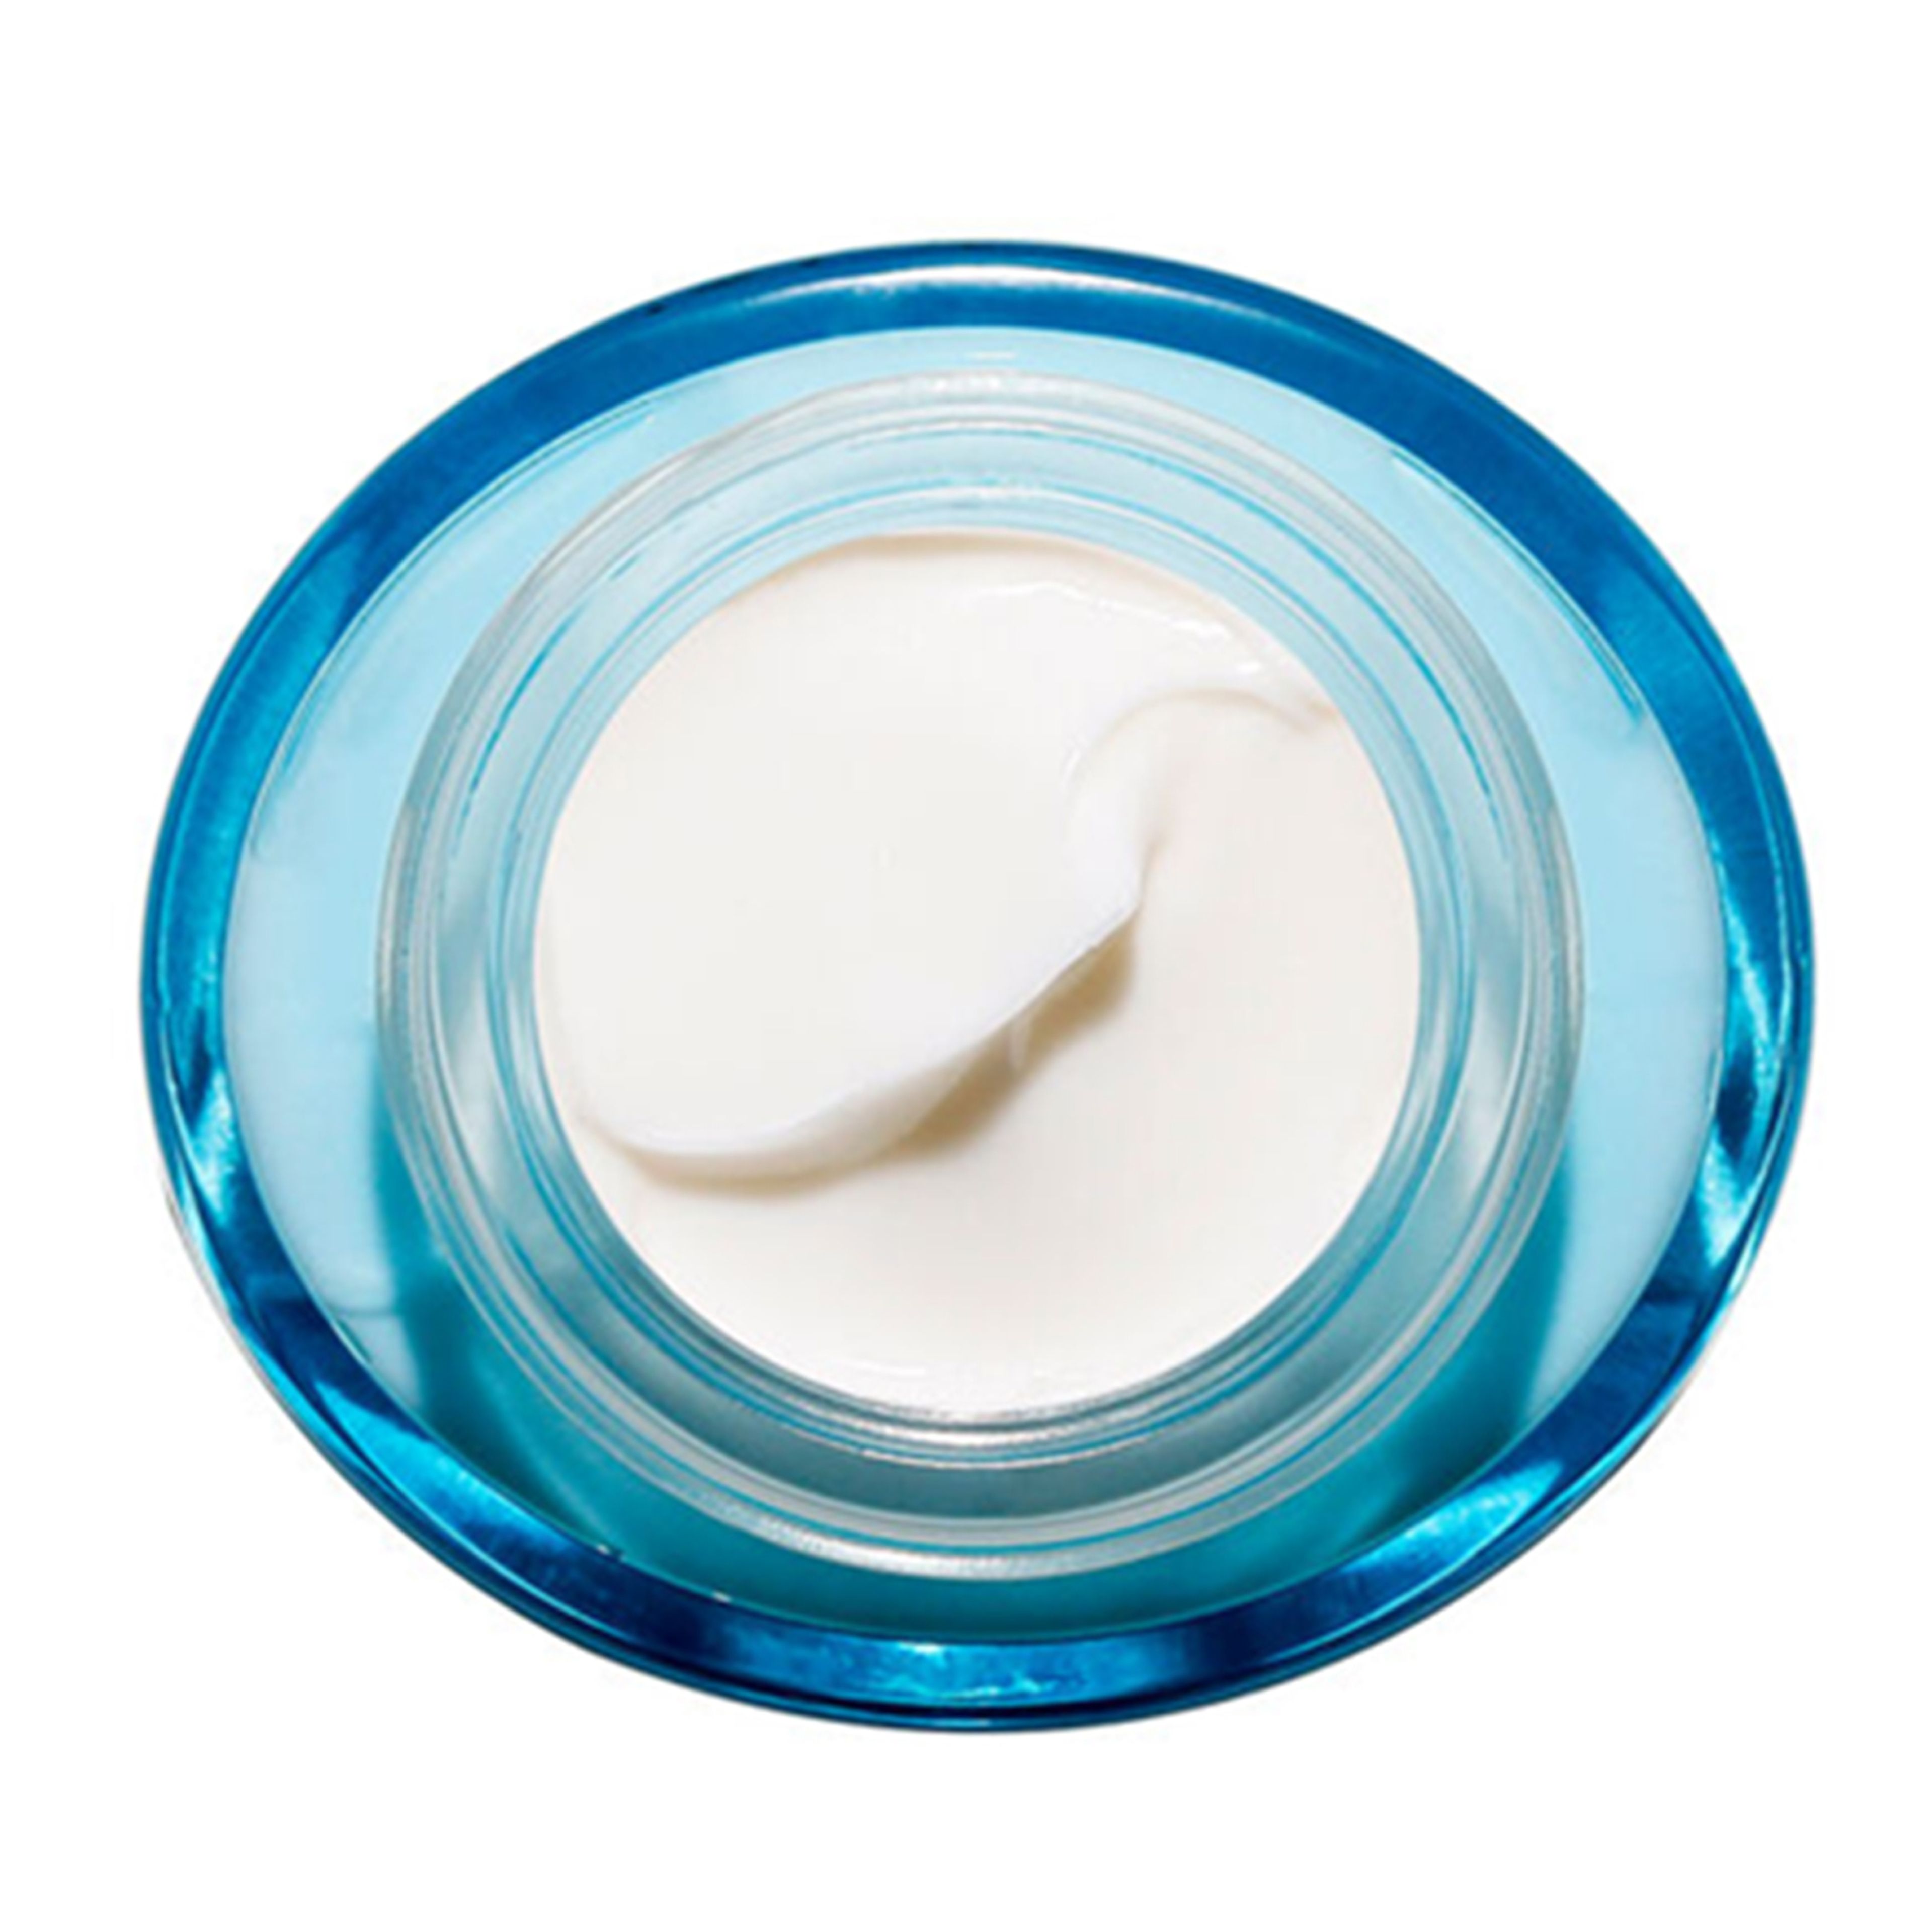 Clarins Hydra-essentiel Crema Idratante Ricca - Per Pelle Molto Secca 4